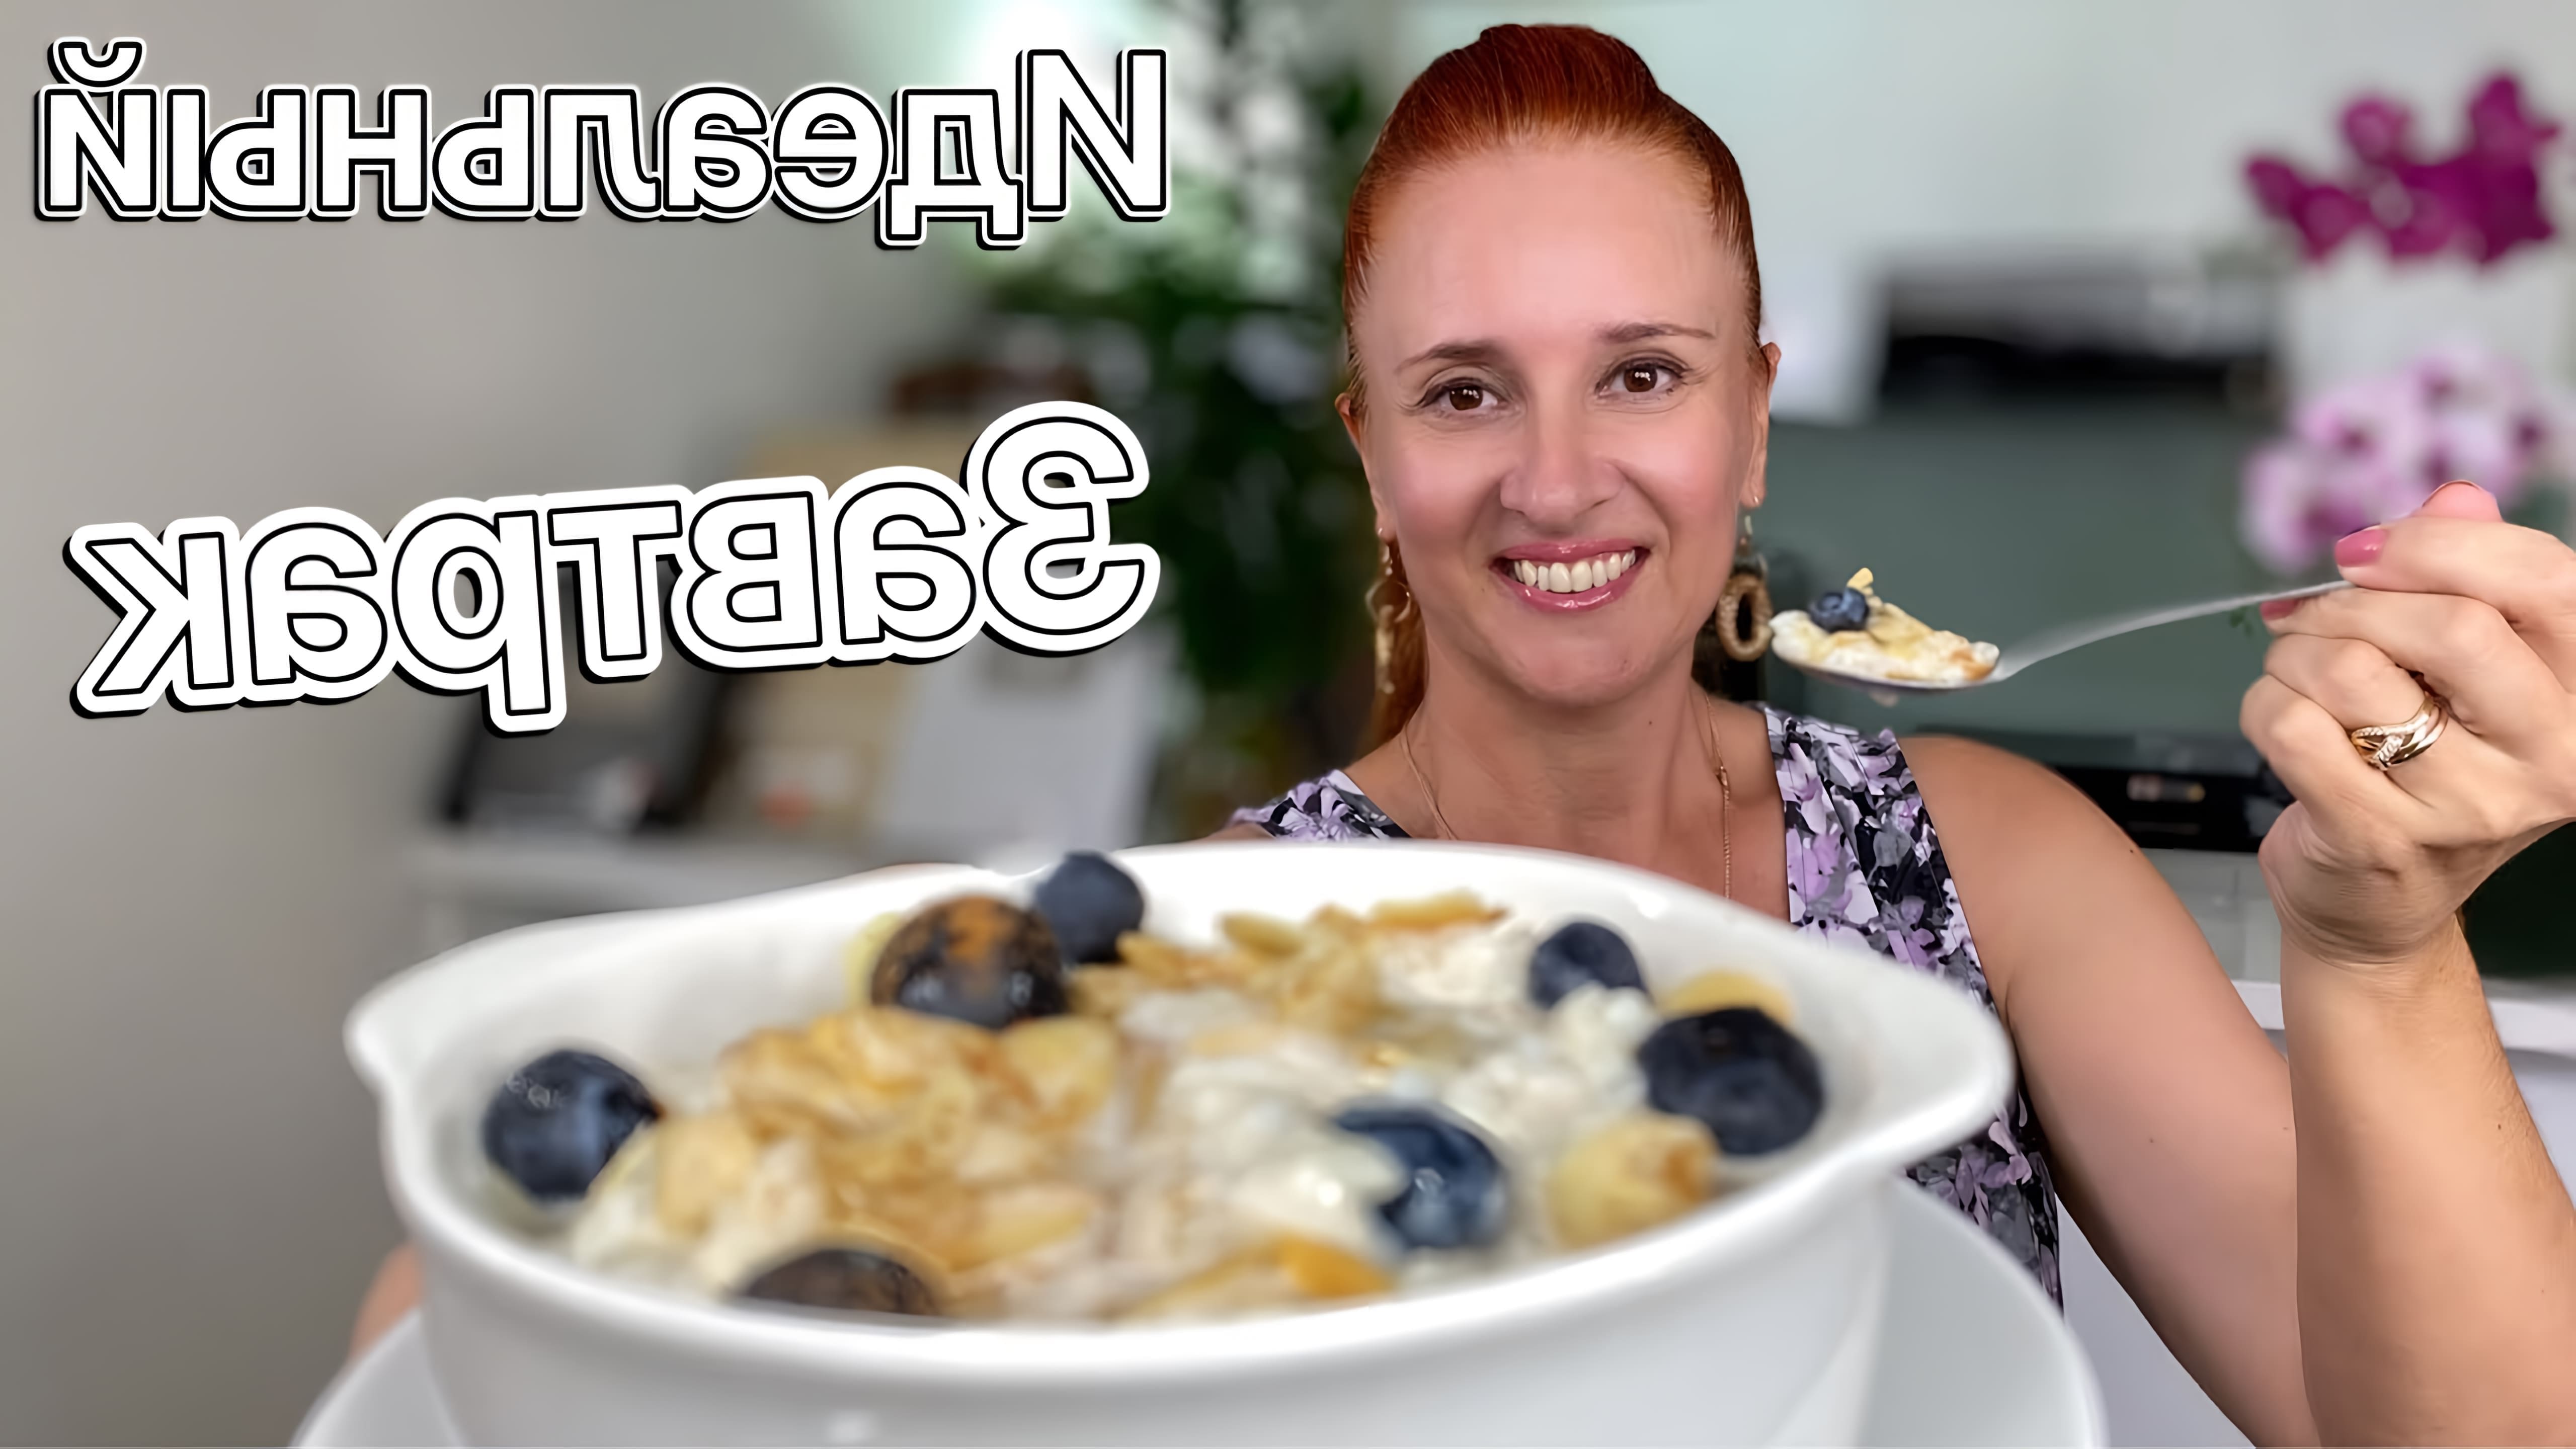 В этом видео демонстрируется рецепт приготовления идеального завтрака - рисовой каши на молоке